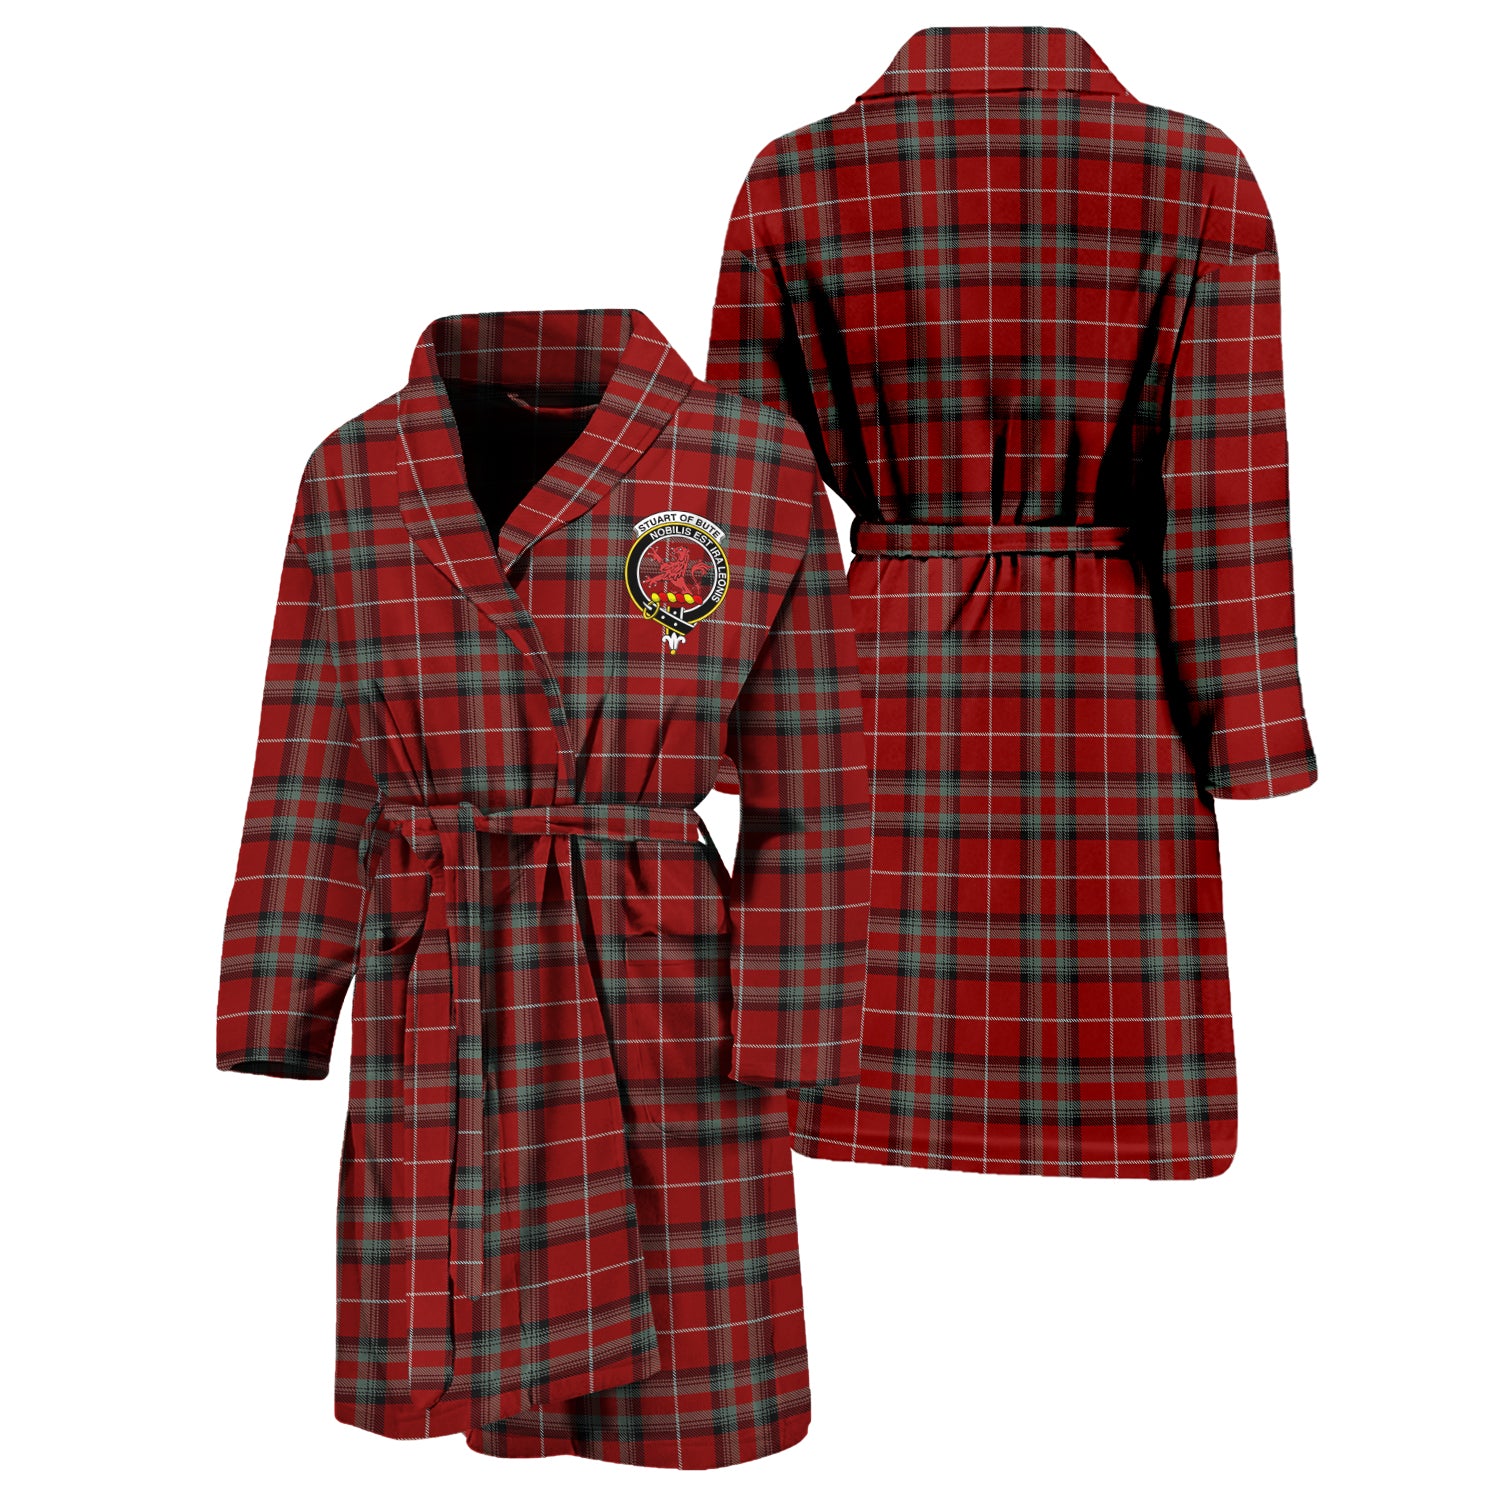 stuart-of-bute-family-crest-tartan-bathrobe-tartan-robe-for-men-and-women